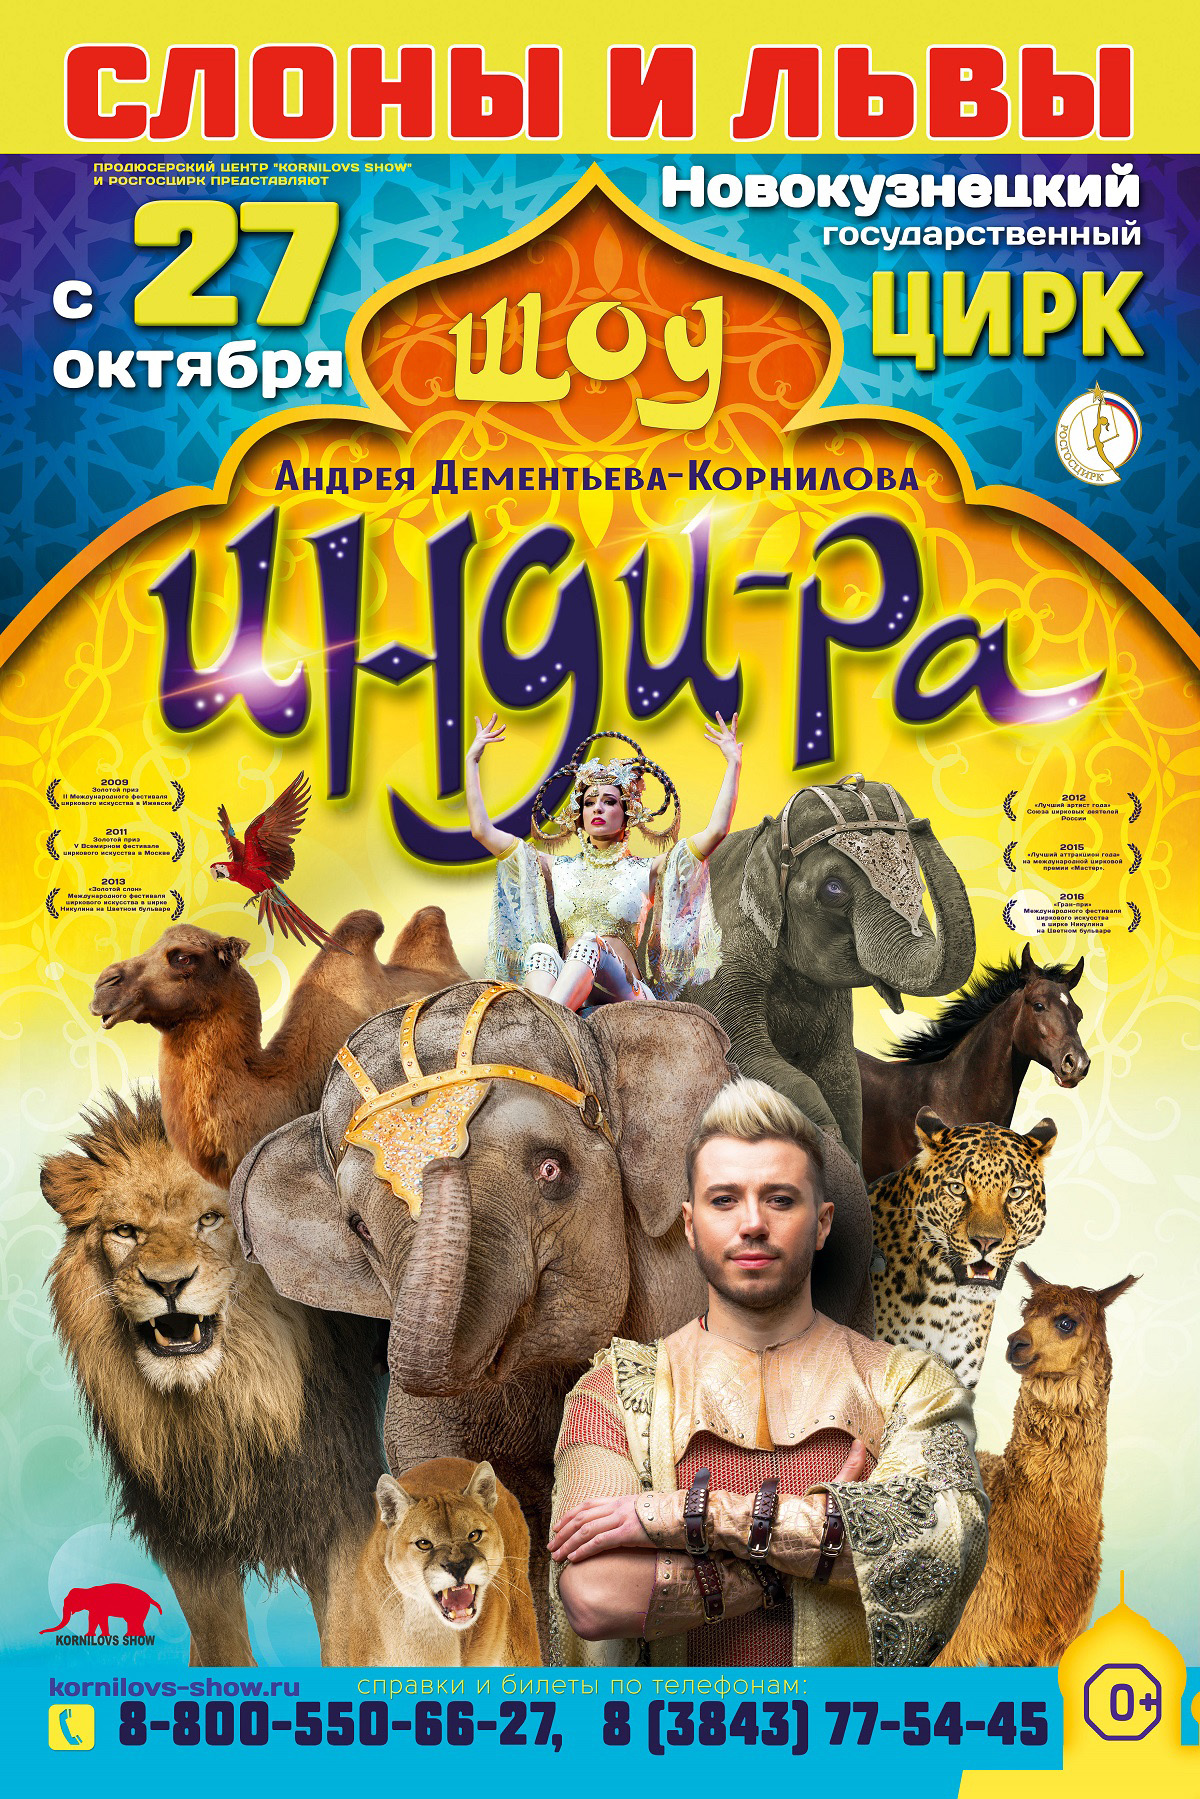 С 27 октября в Новокузнецком цирке Циркового Шоу «ИНДИ-РА»